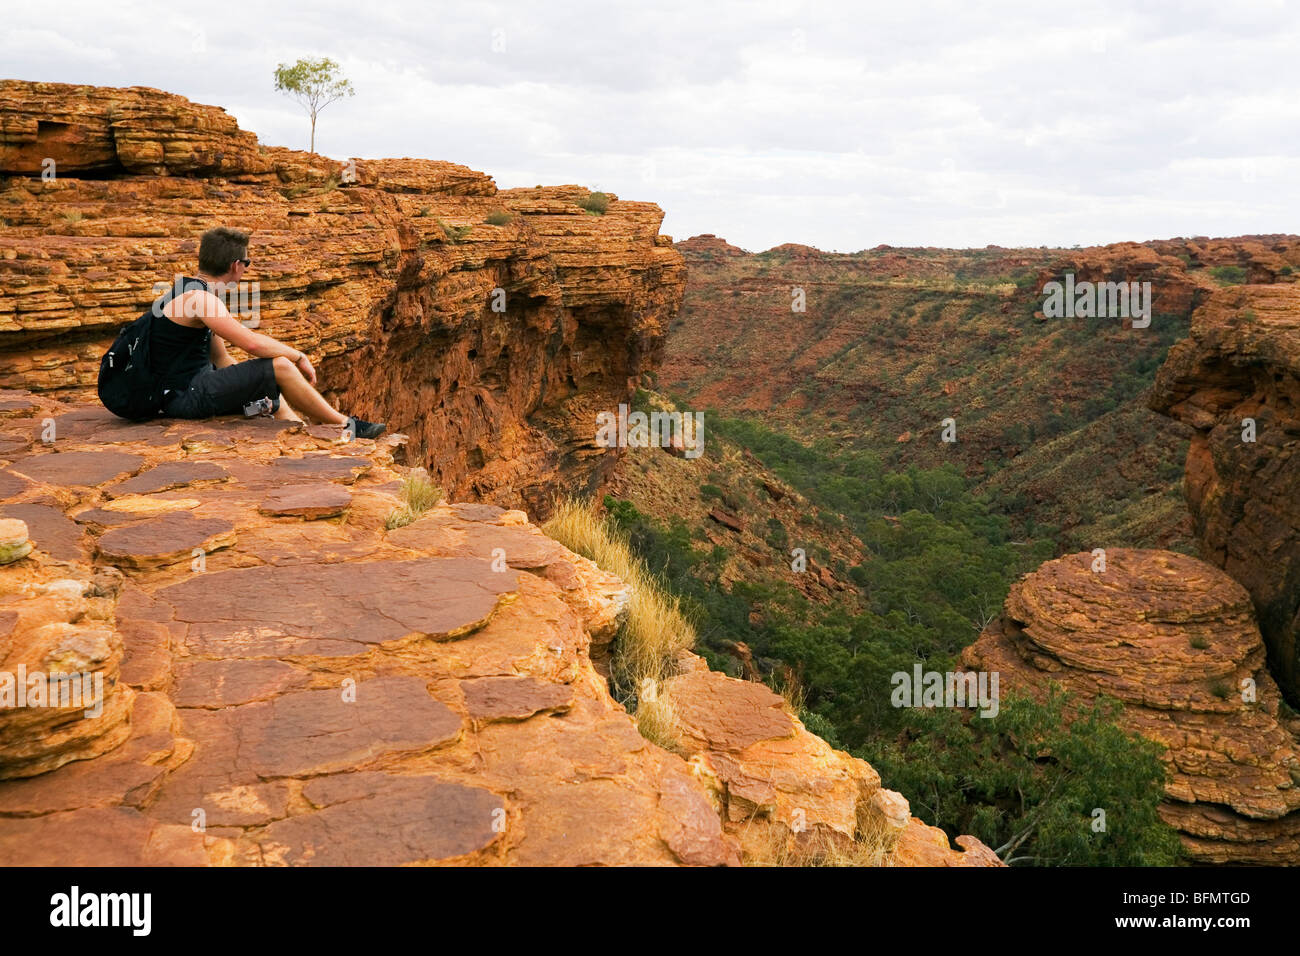 Australia, Territorio del Nord, Watarrka (Kings Canyon) Parco Nazionale. Un escursionista si affaccia su Kings Canyon. (MR) (PR) Foto Stock